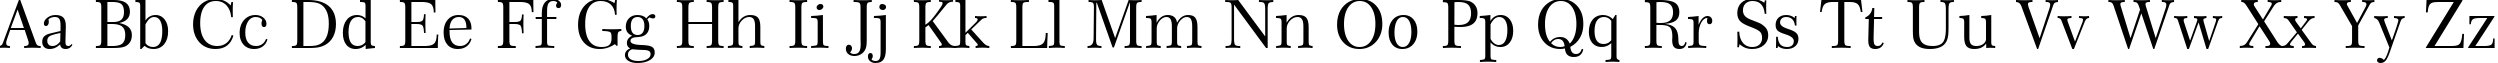 Пример написания английского алфавита шрифтом Century 751 BT